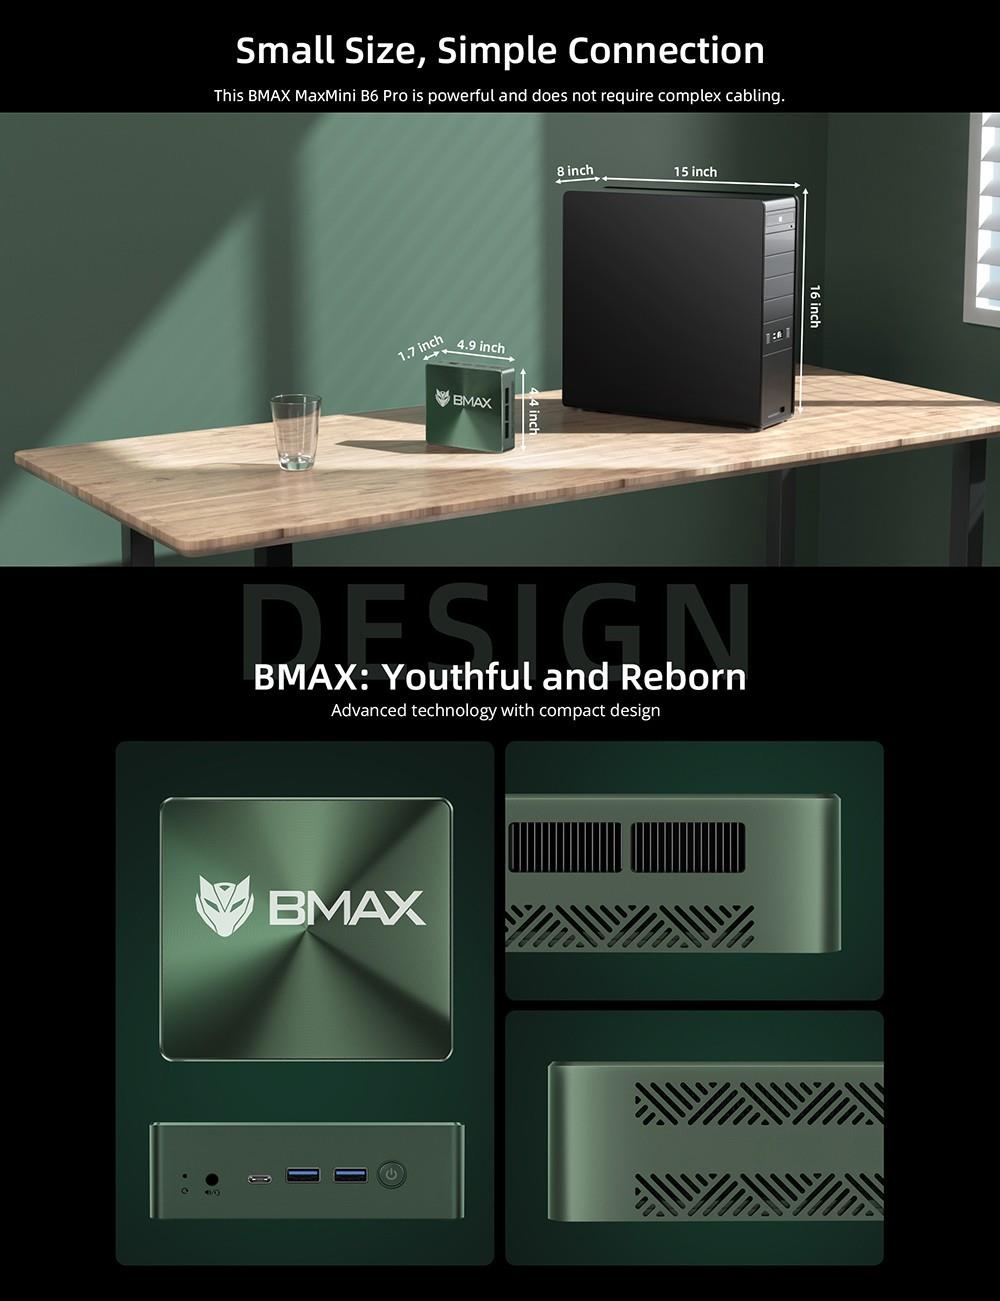 BMAX B6 Pro Mini-pc Intel Core i5-1030NG7, 16 GB LPDDR4 512 GB SSD, Windows 11, 5G WiFi